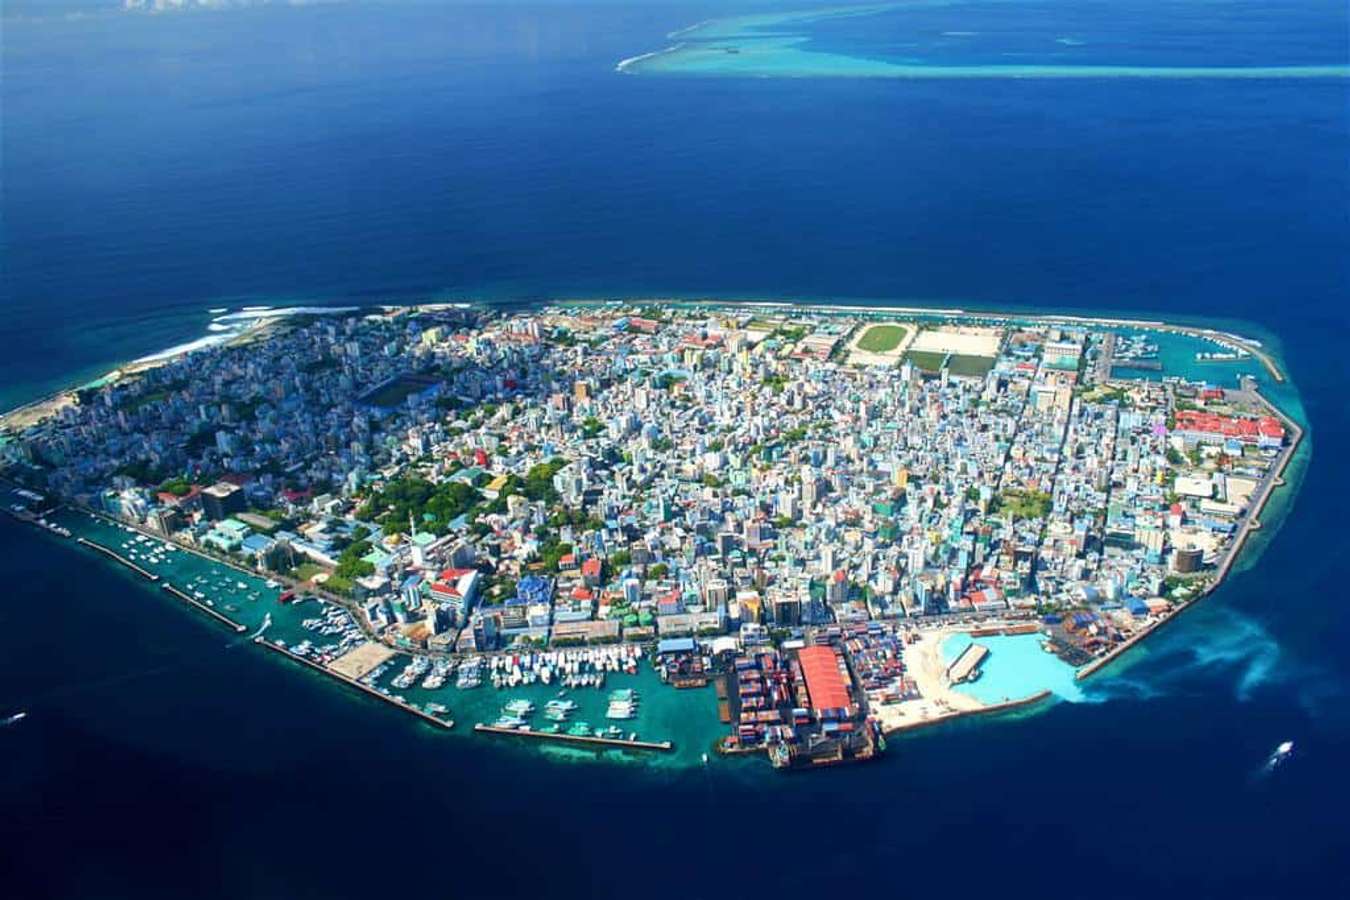 Bỏ túi ngay cẩm nang du lịch Maldives mới nhất 2019 